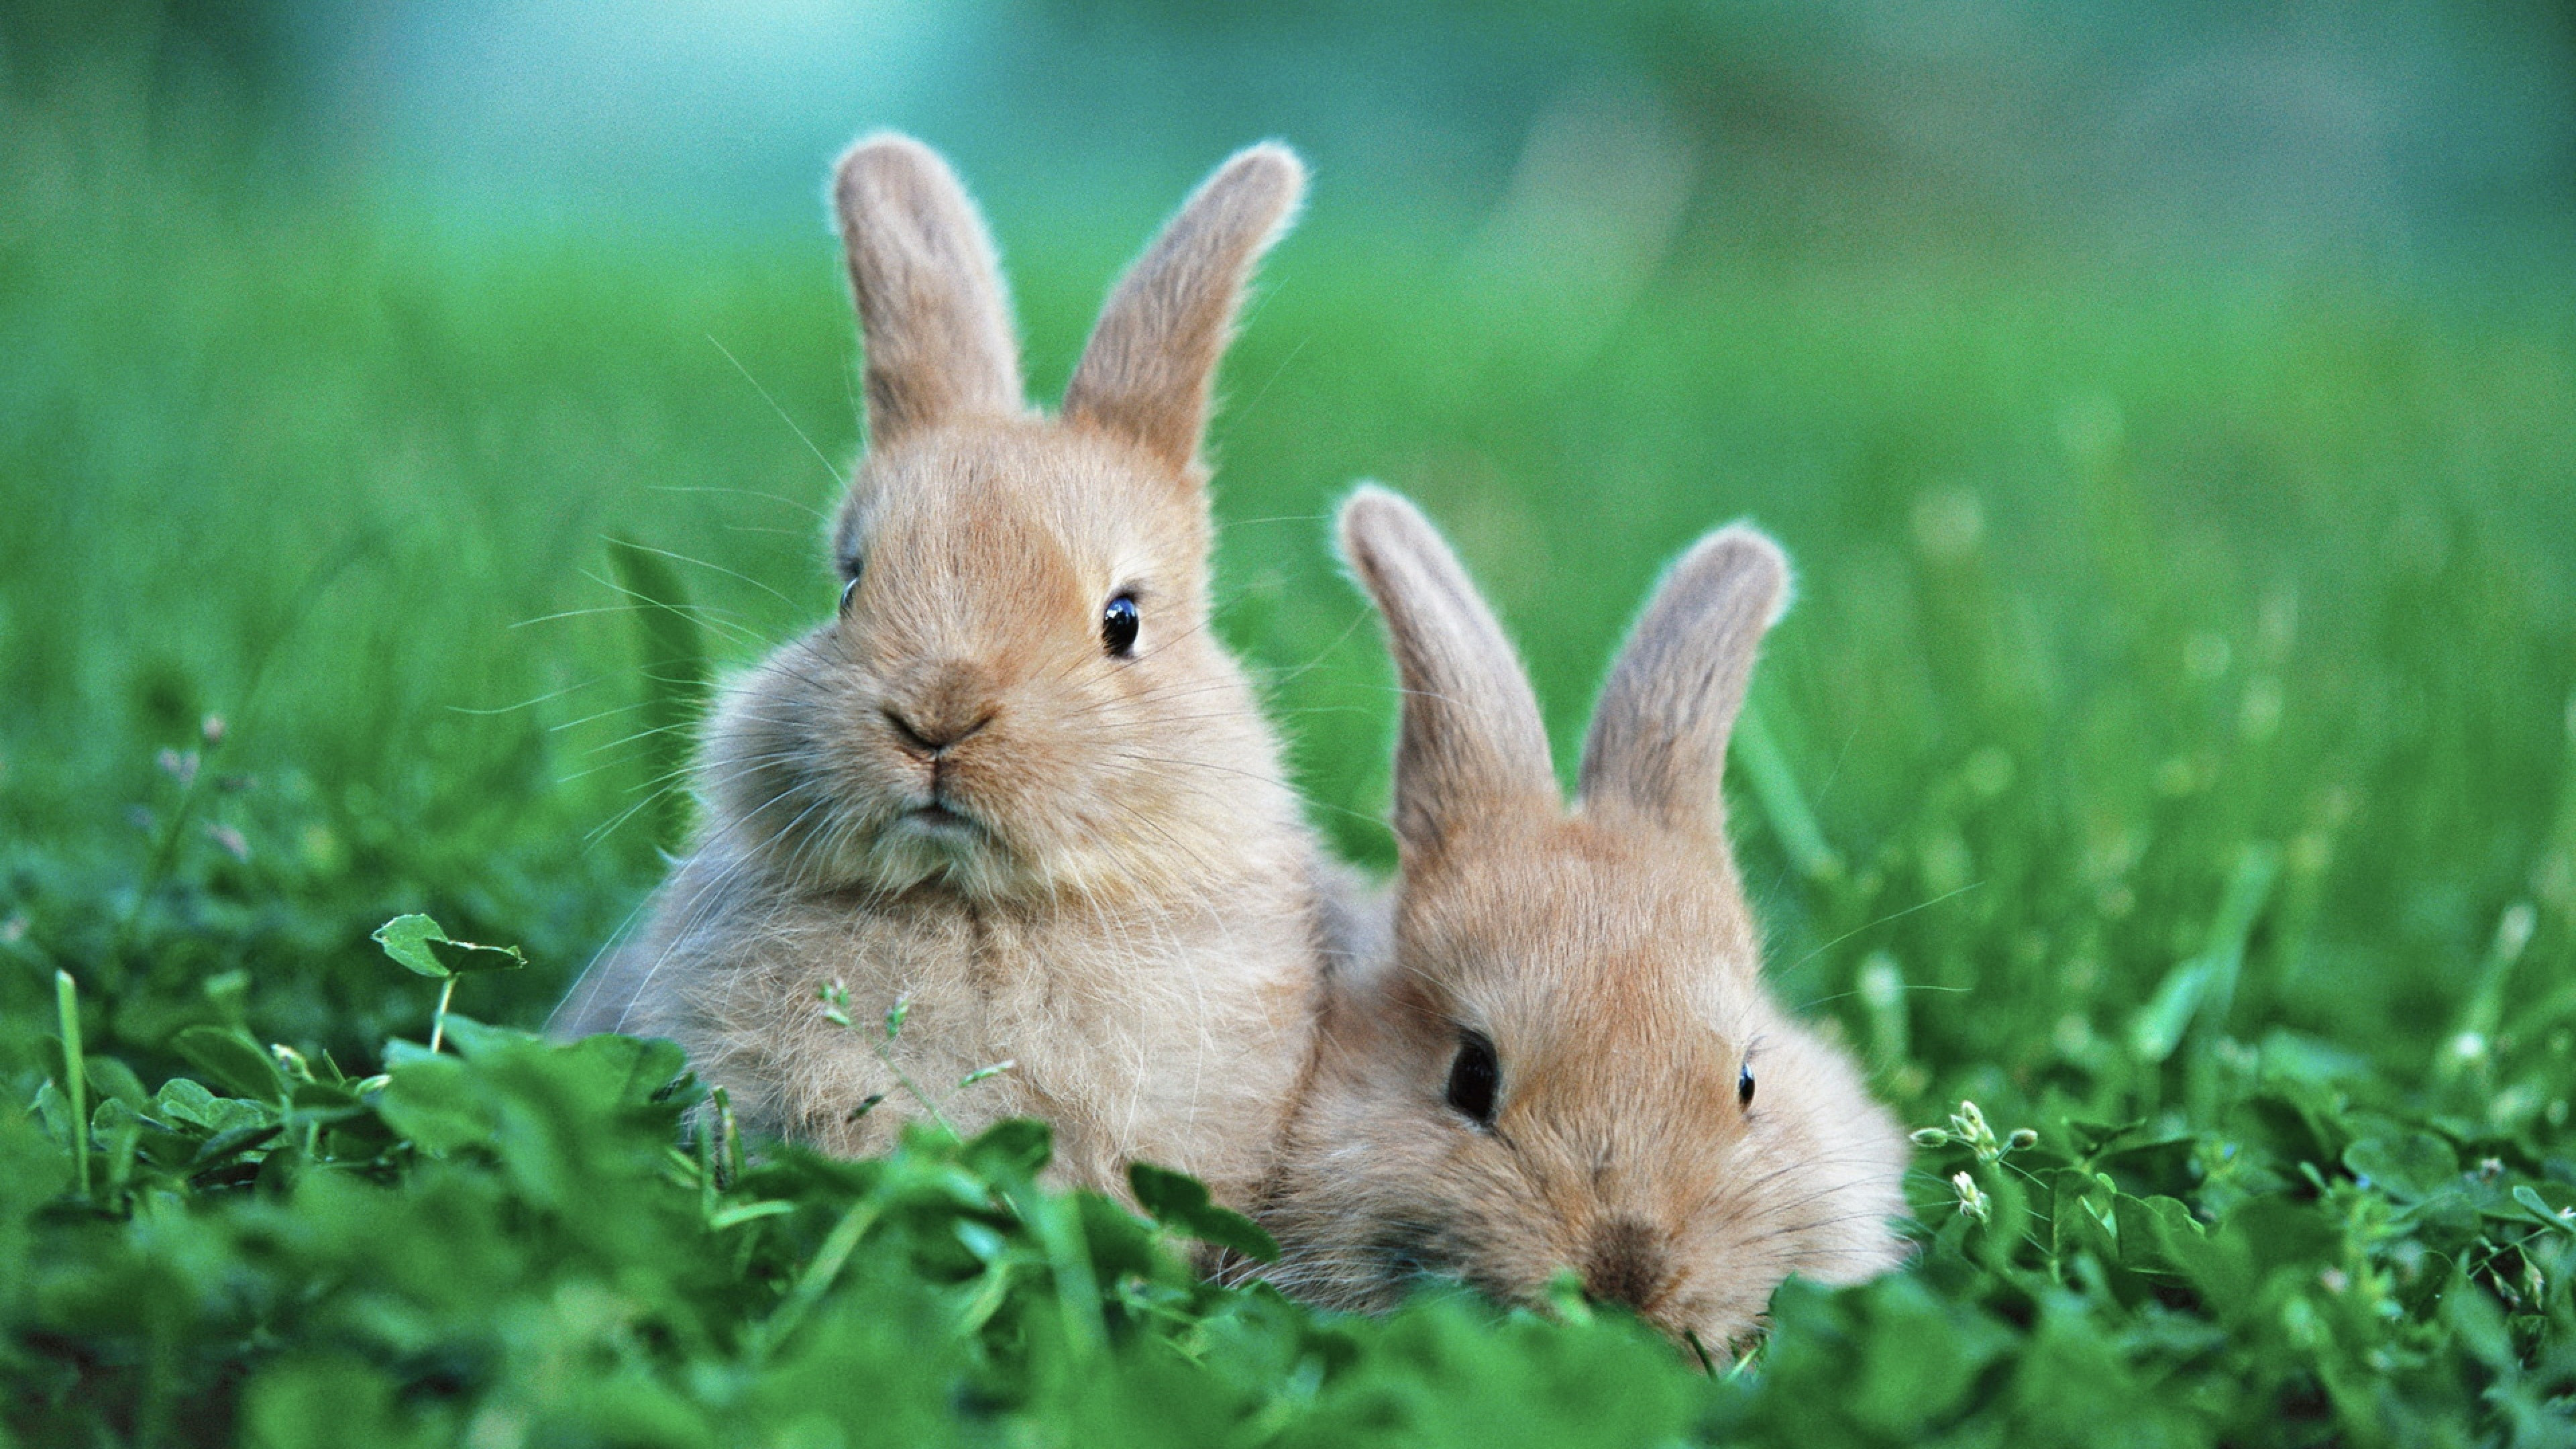 Adorable rabbit couple, Widescreen wallpapers, Nature-inspired scenes, Cute animals, 3840x2160 4K Desktop